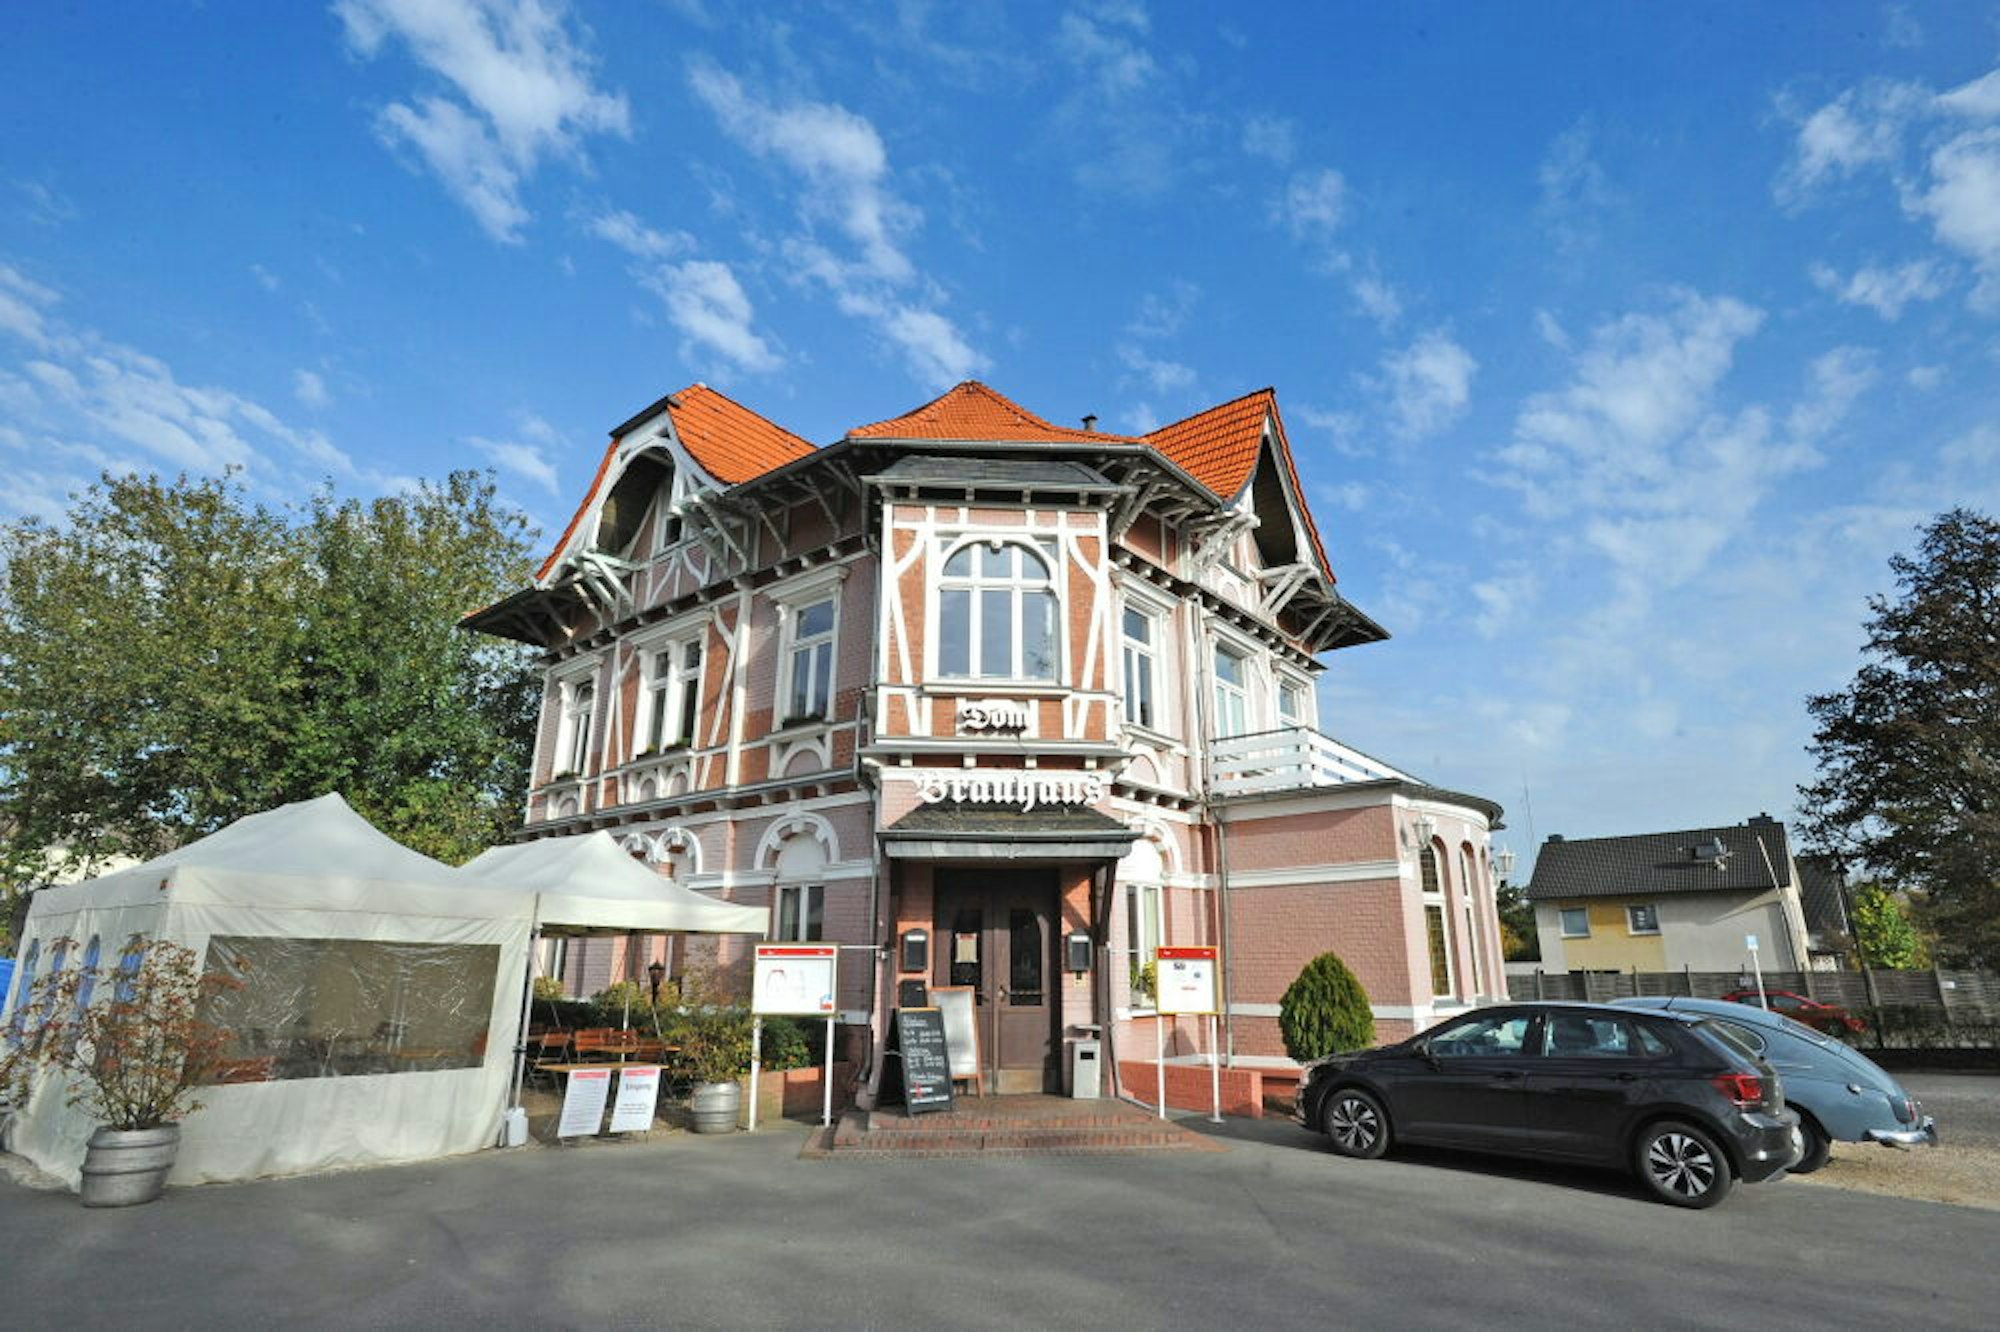 Das „Dom Brauhaus“ stammt aus dem Jahr 1889 – und wurde ursprünglich als Fabrikantenvilla errichtet.